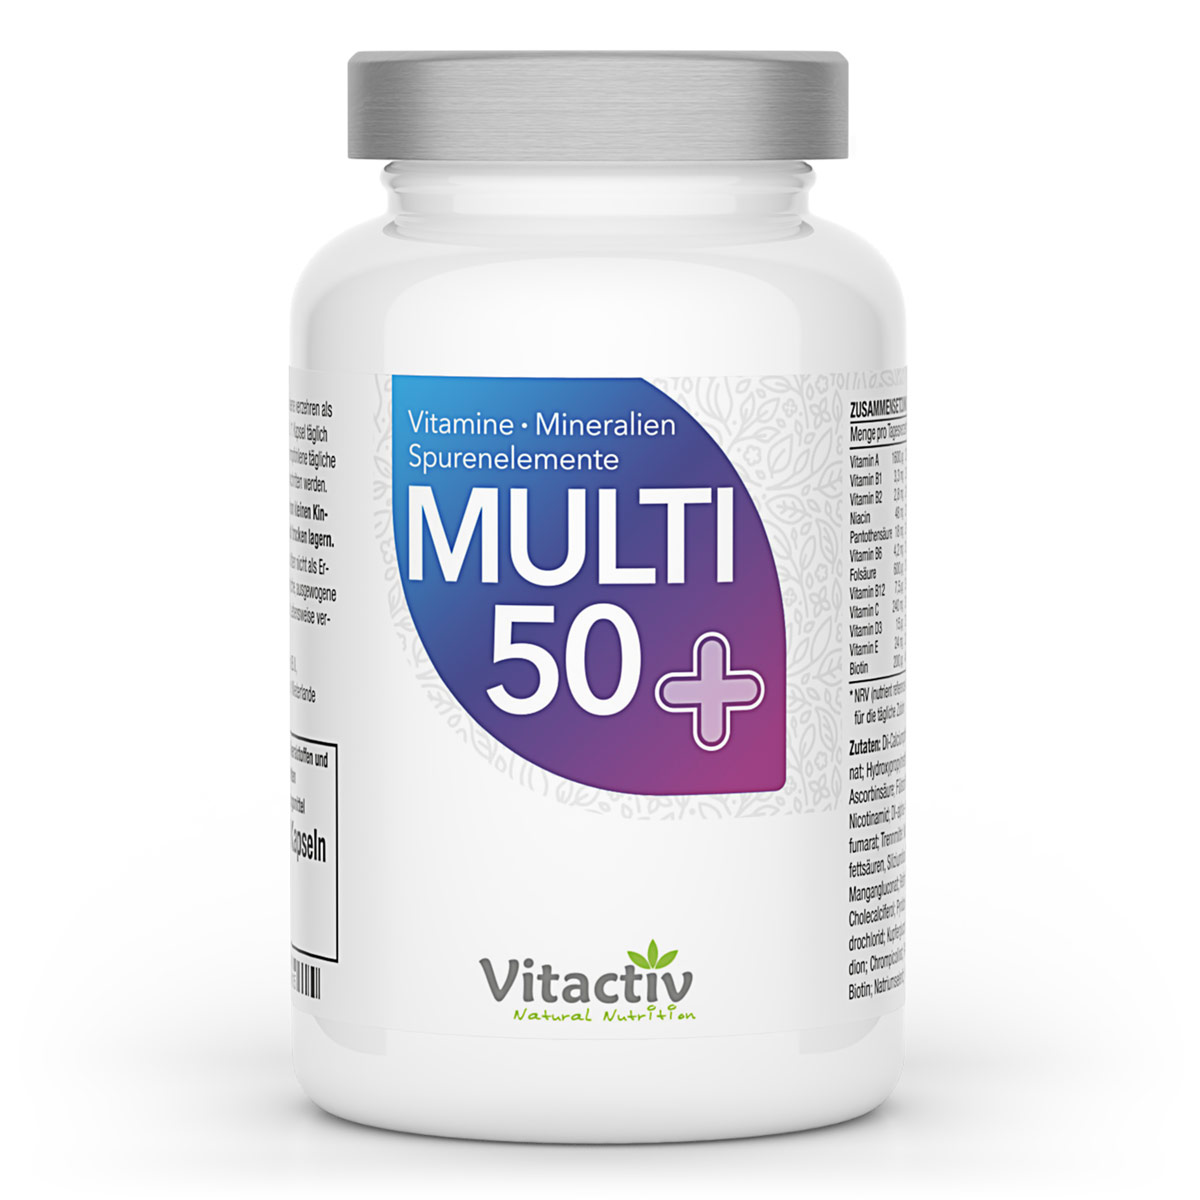 Produktverpackung MULTI 50+ Vitamin- & Mineralstoff-Komplex